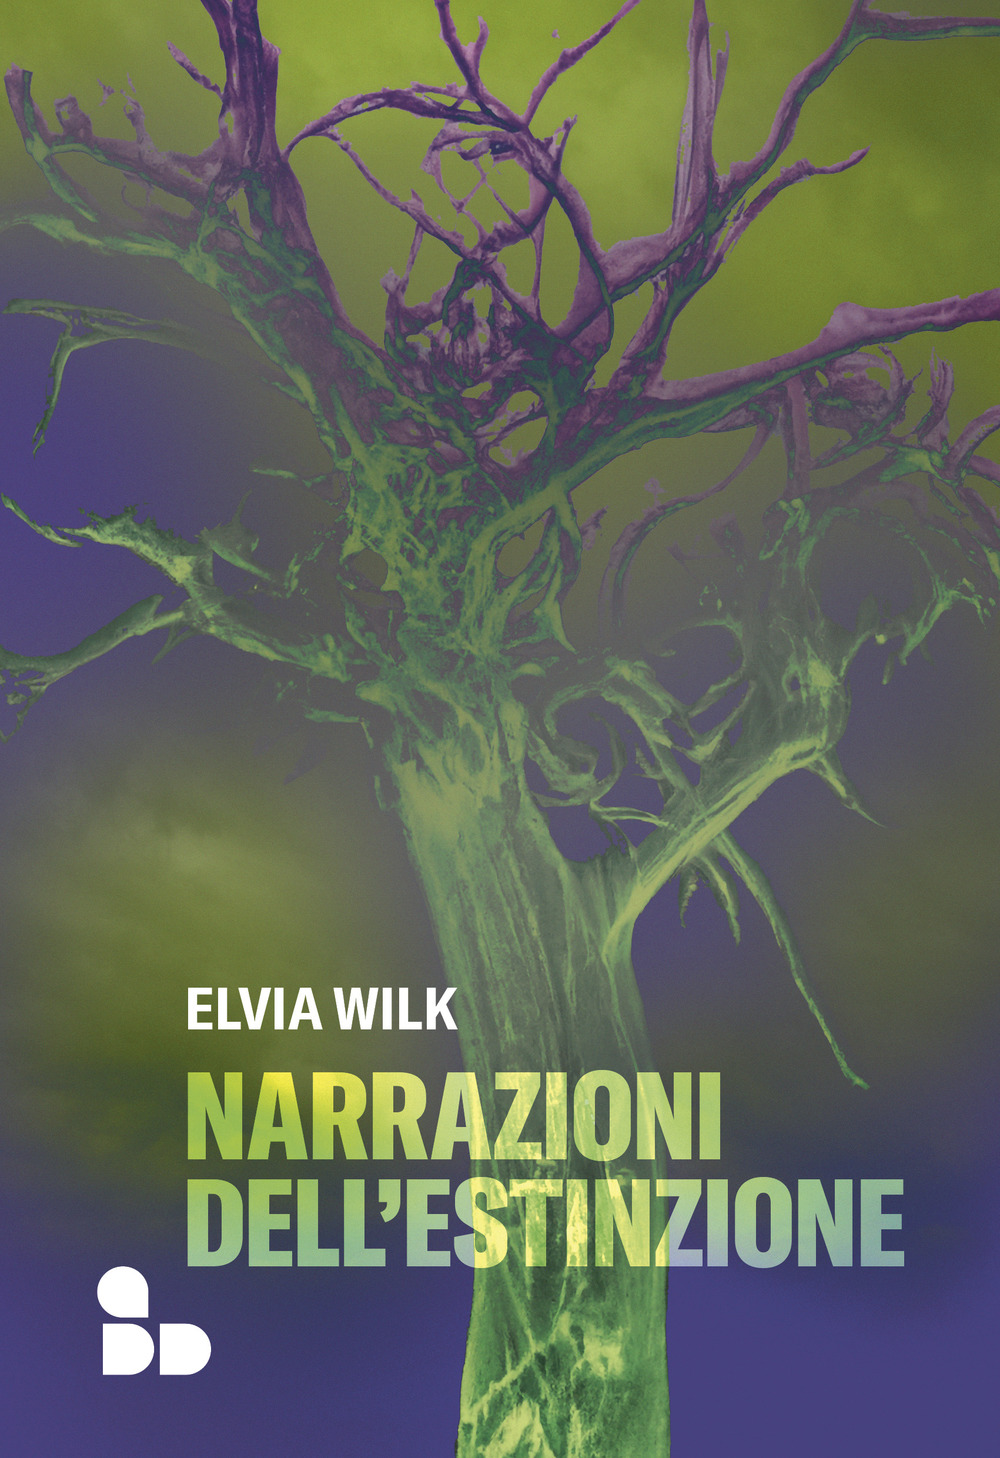 Libri Wilk Elvia - Narrazioni Dell'estinzione NUOVO SIGILLATO, EDIZIONE DEL 24/03/2023 SUBITO DISPONIBILE